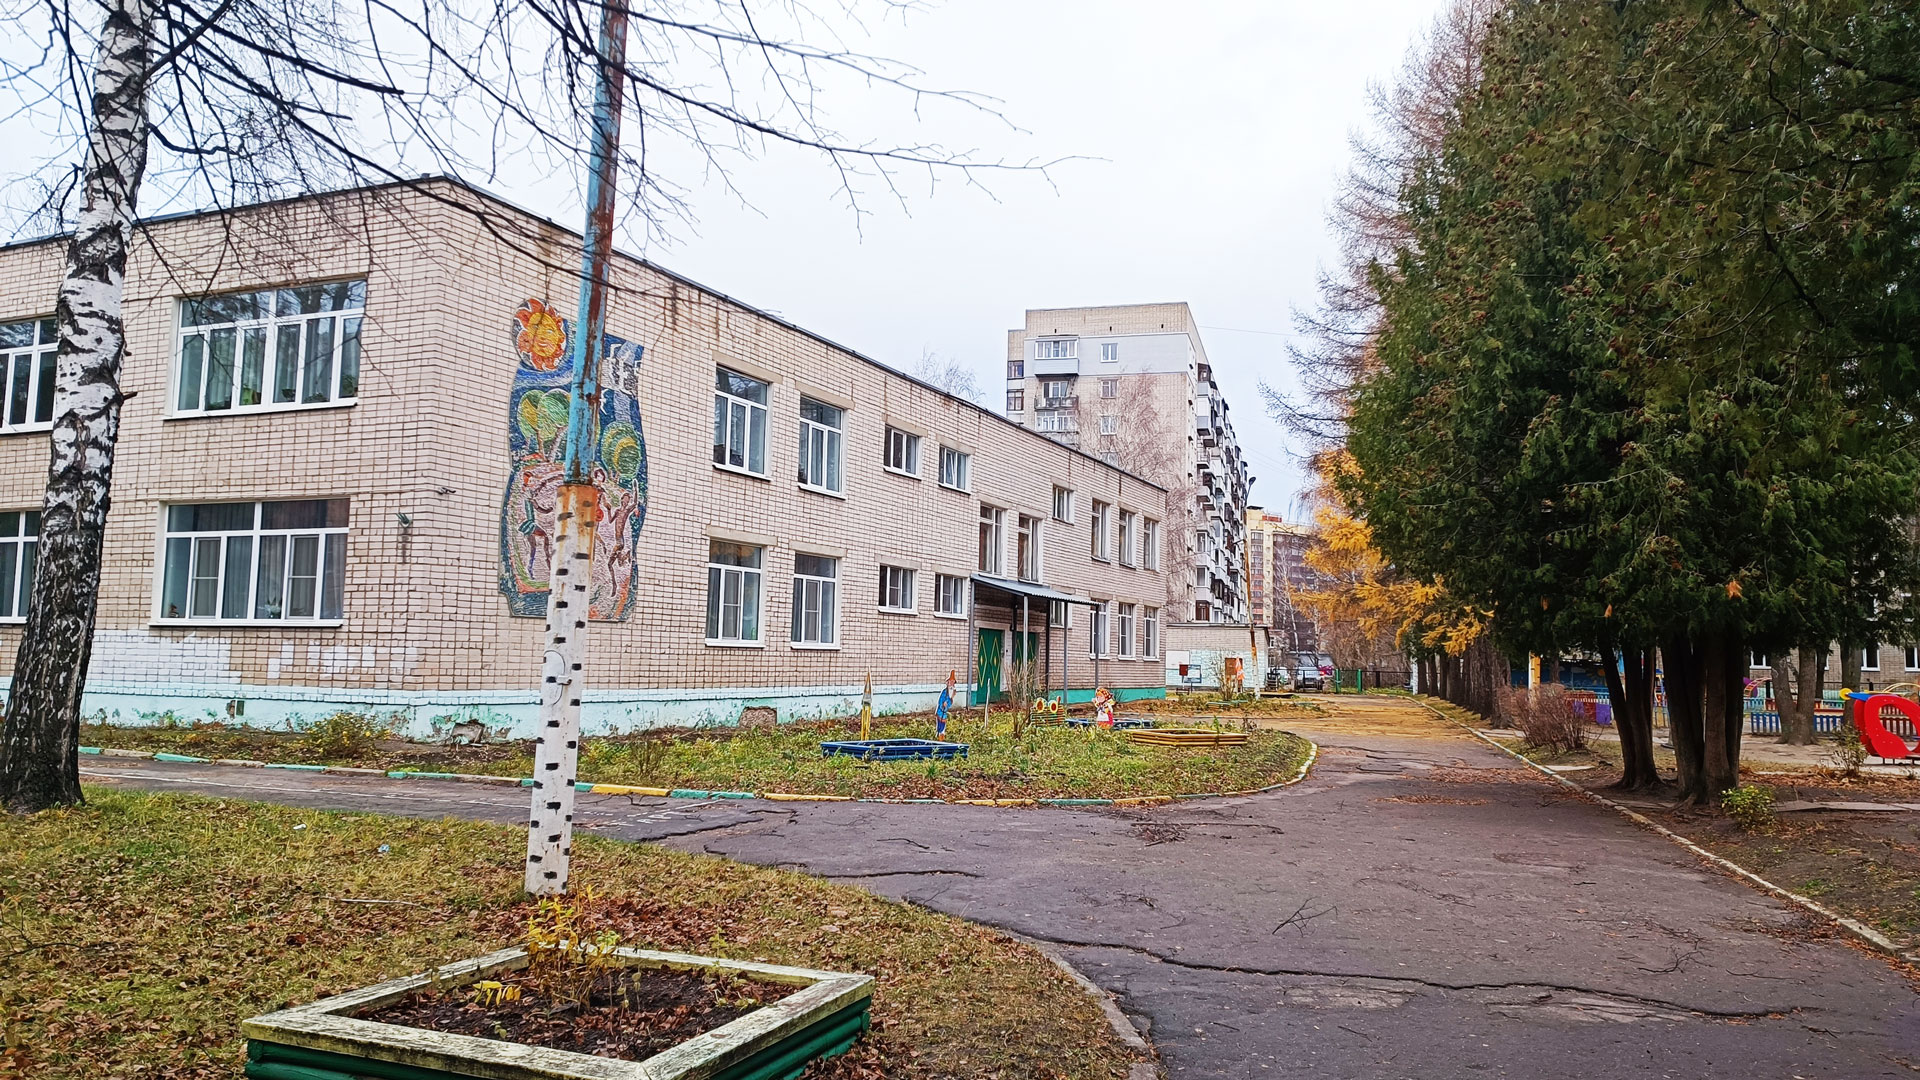 Детский сад 29 Ярославль: общий вид здания.